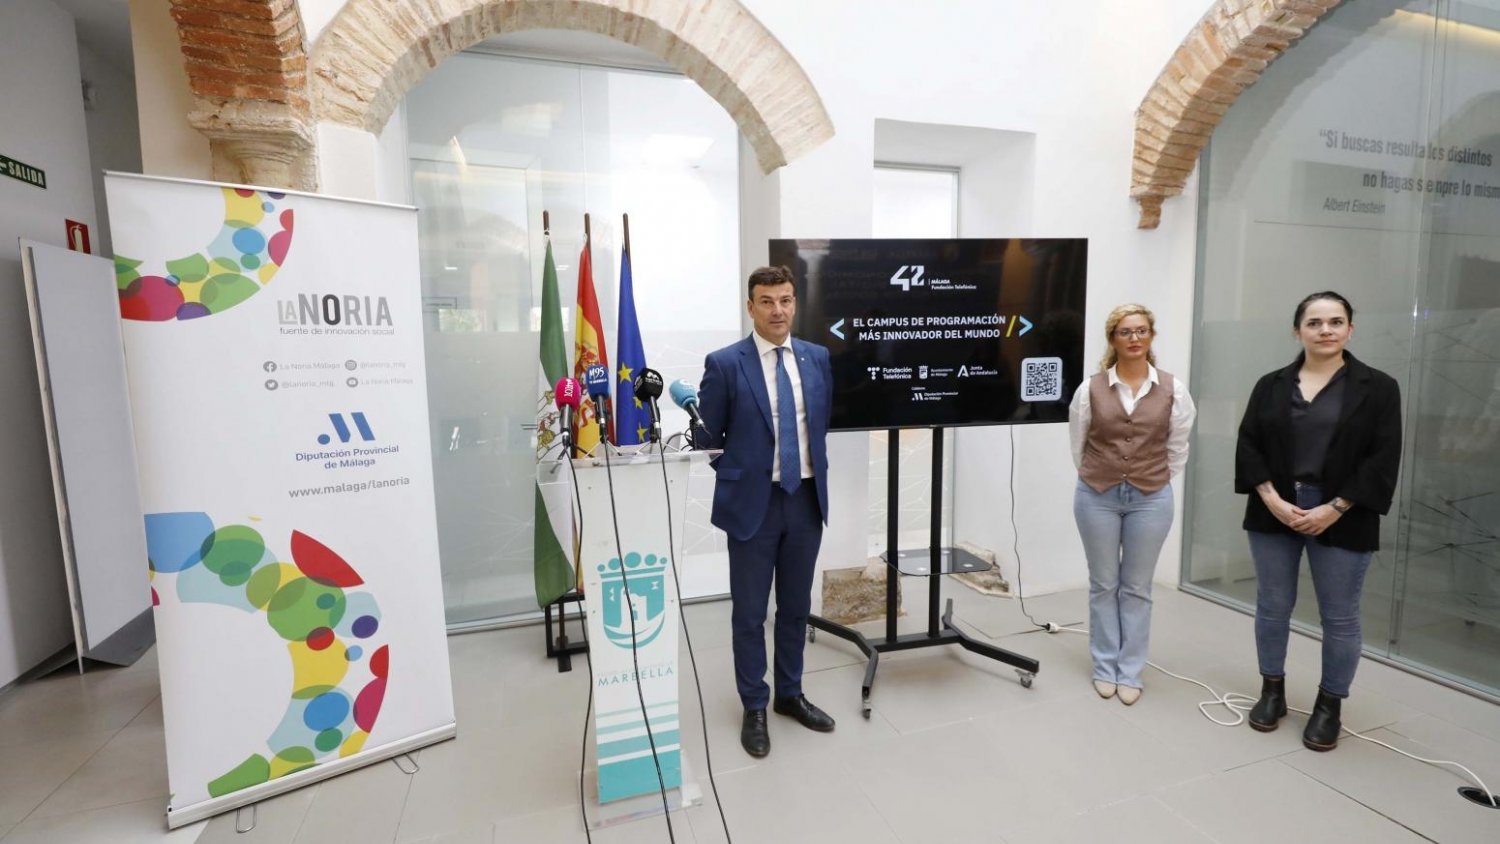 Diputación informa en Marbella sobre las oportunidades formativas del campus de programación 42 Málaga